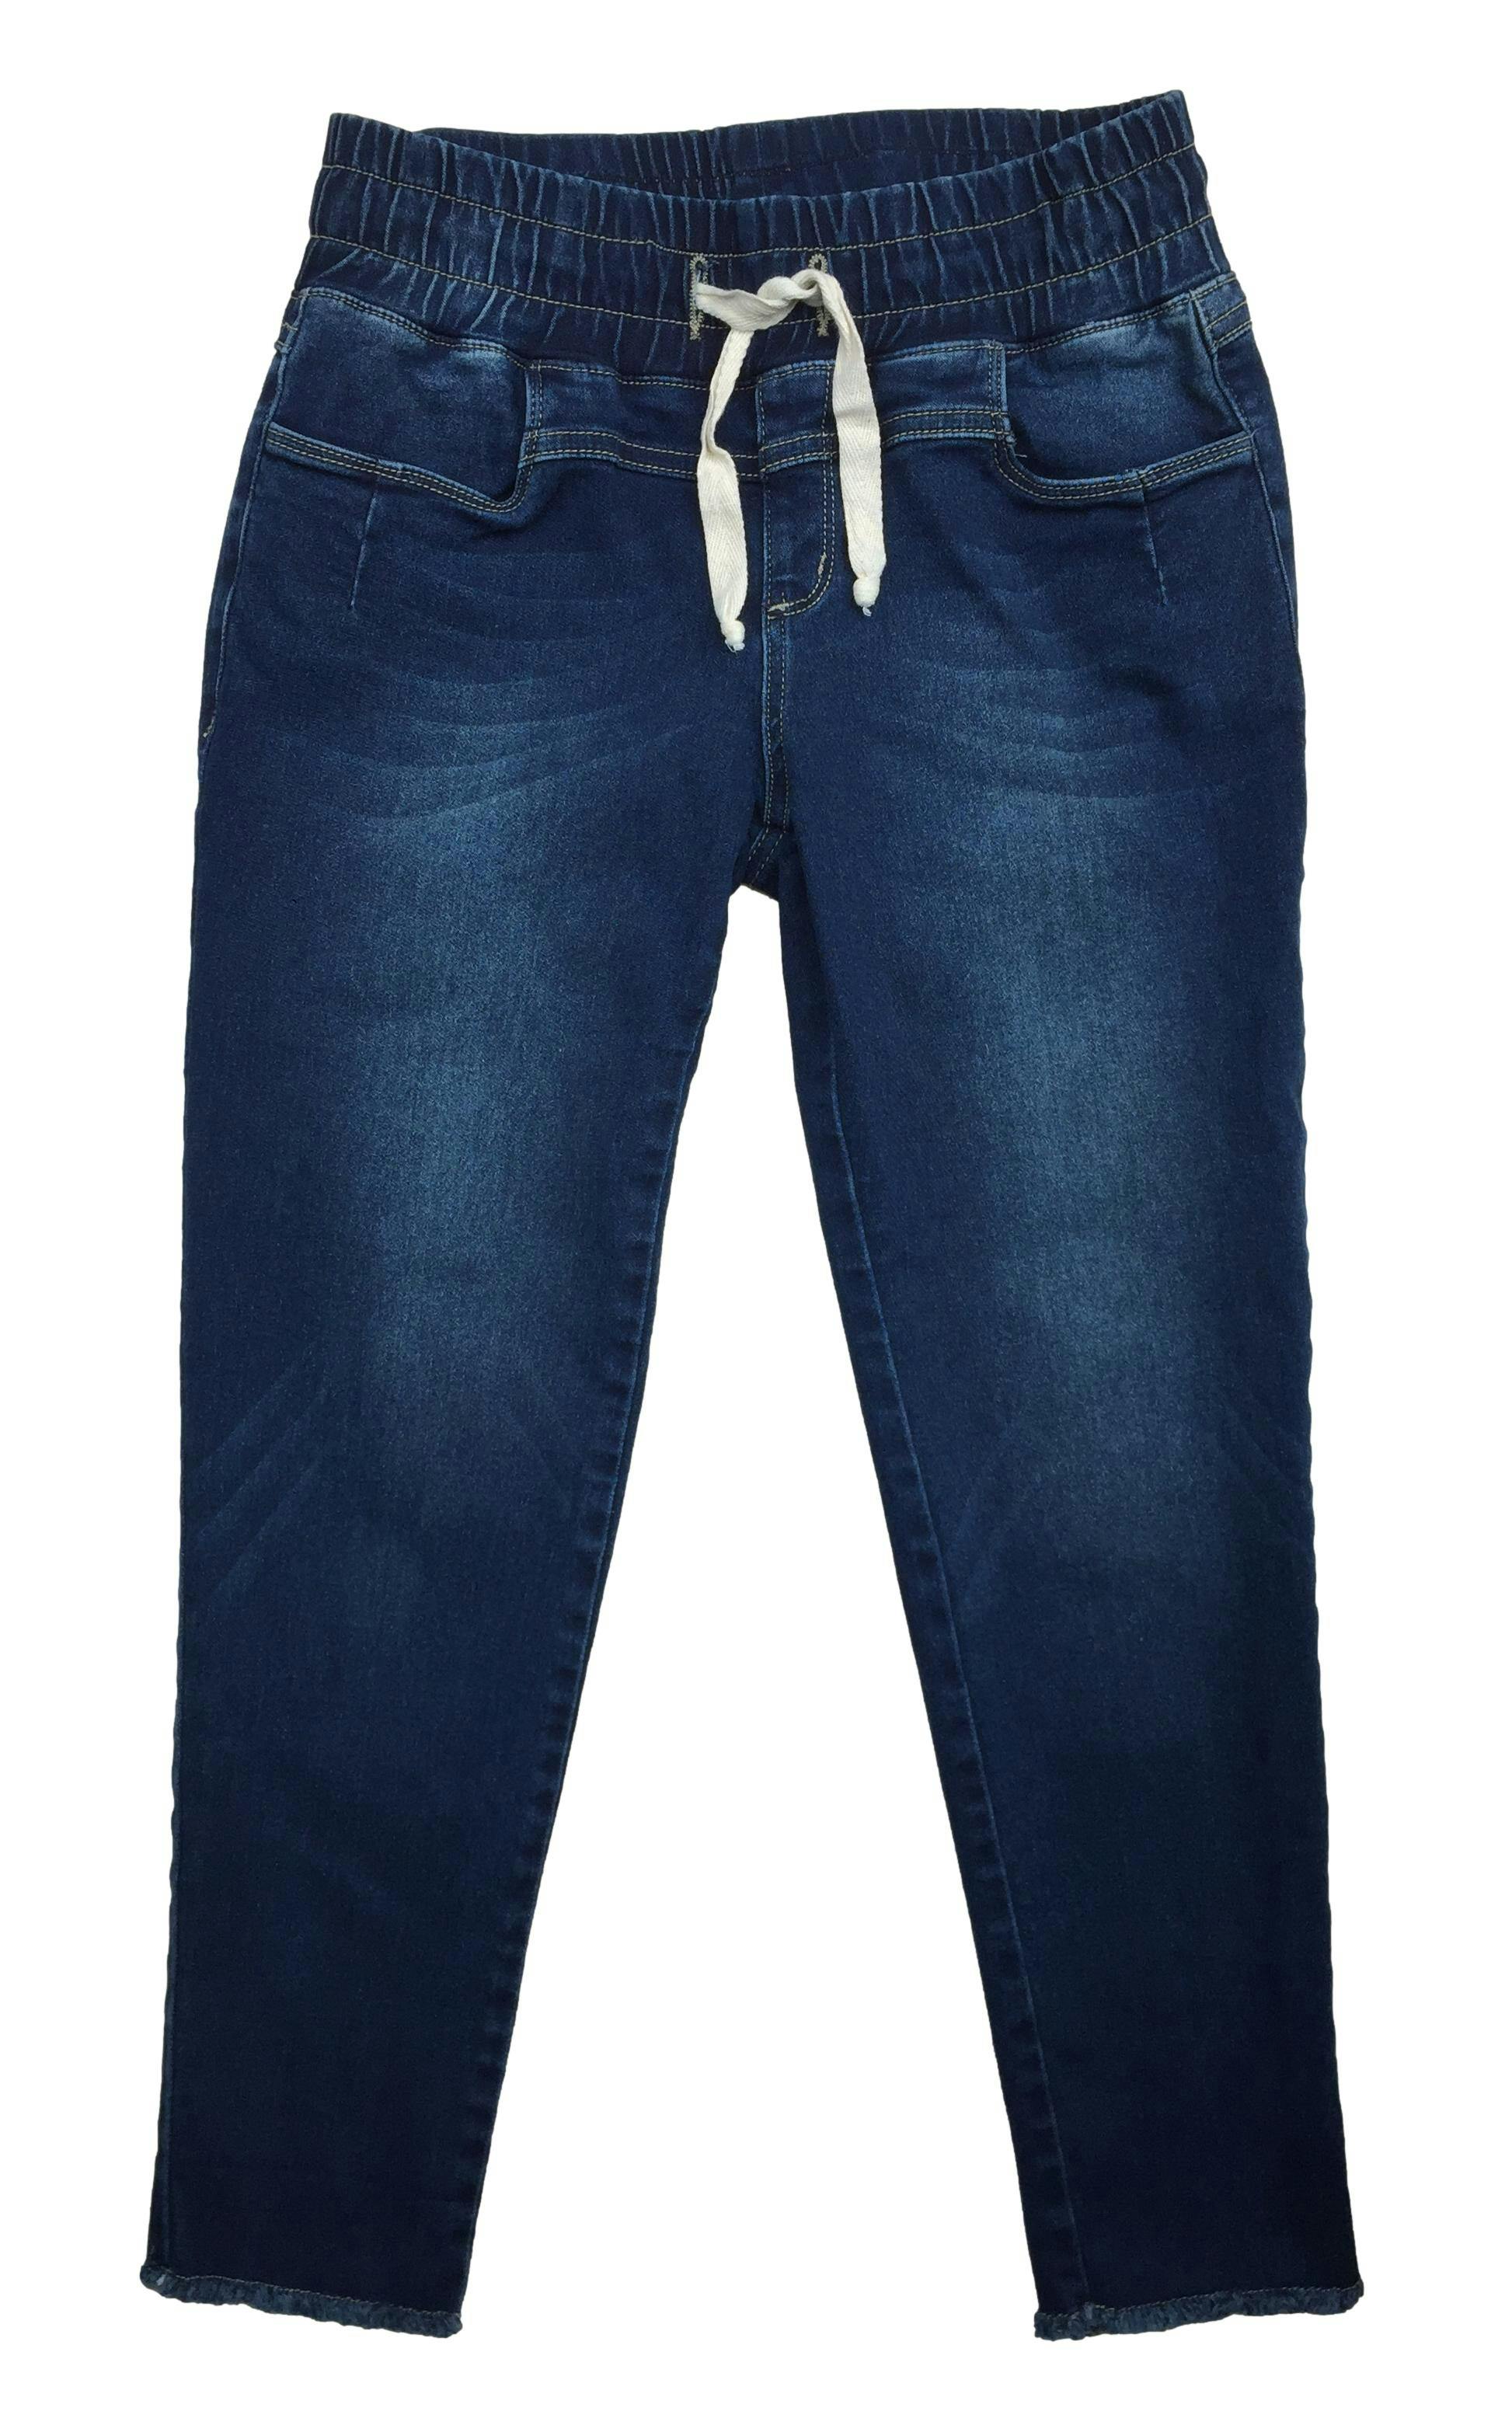 Pantalón jean azul con cintura elasticada y cintos para ajustar. Cintura 70cm sin estirar, Largo 84cm.